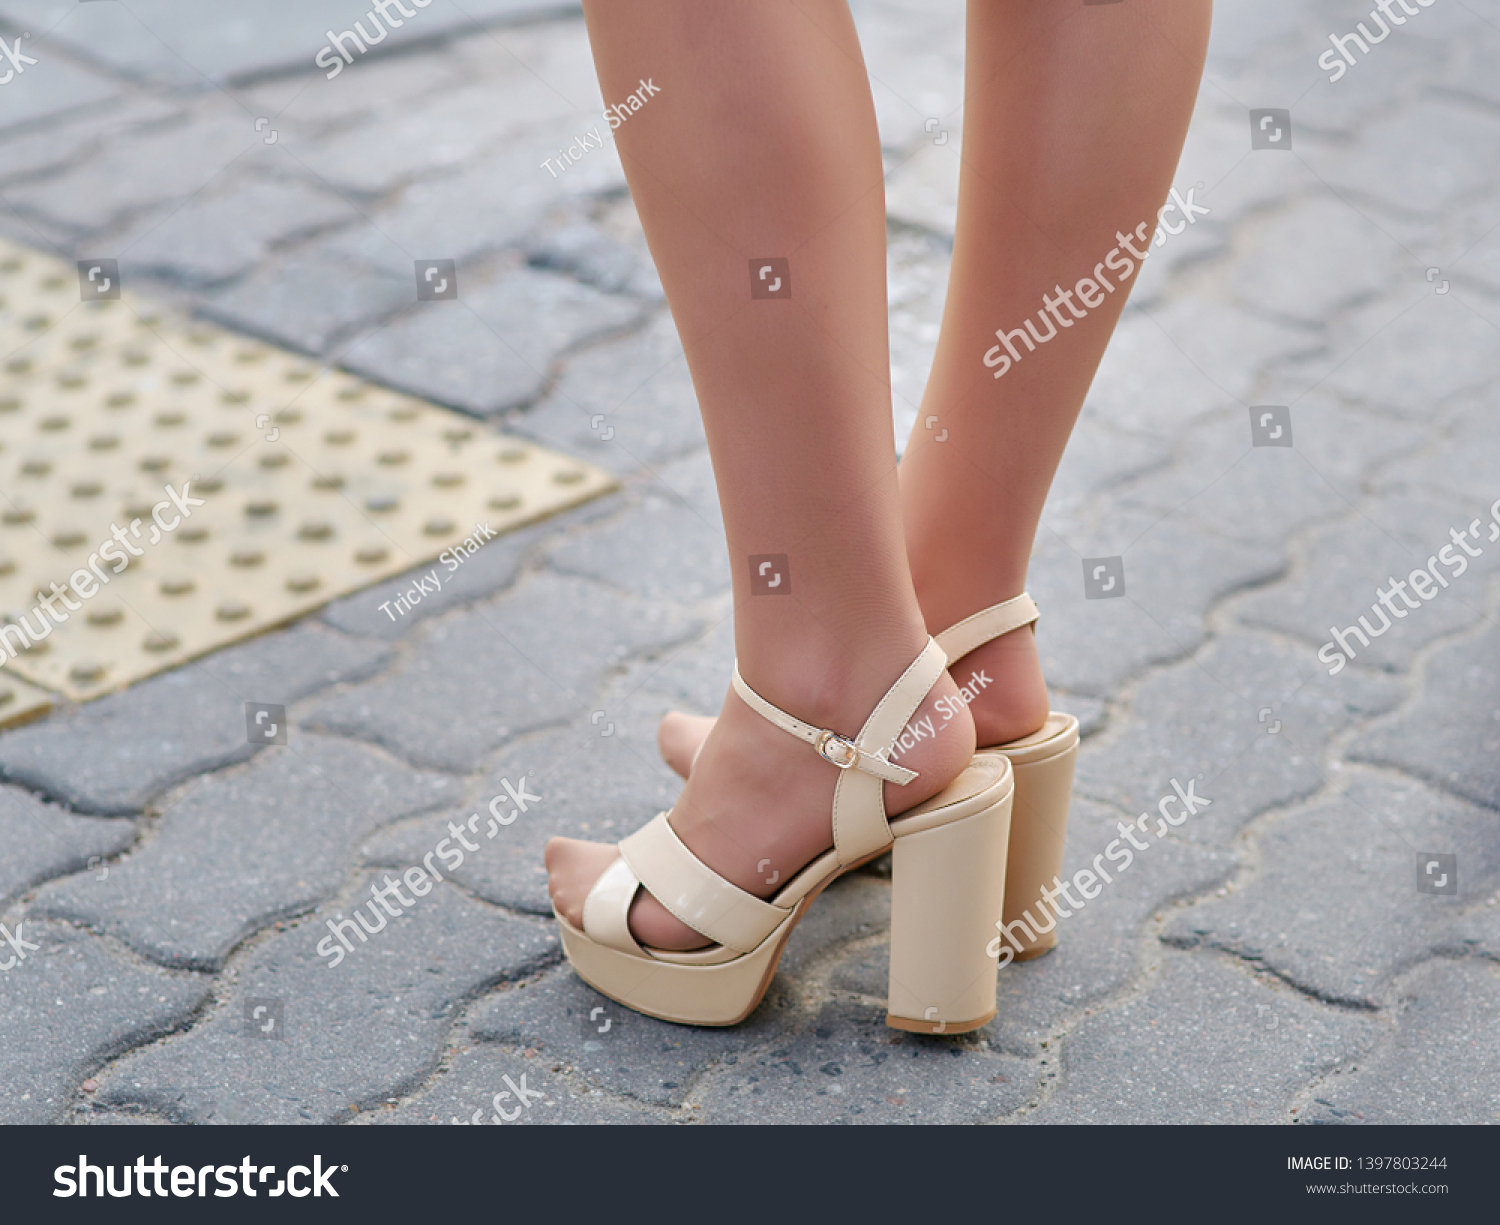 Legs heels nylons